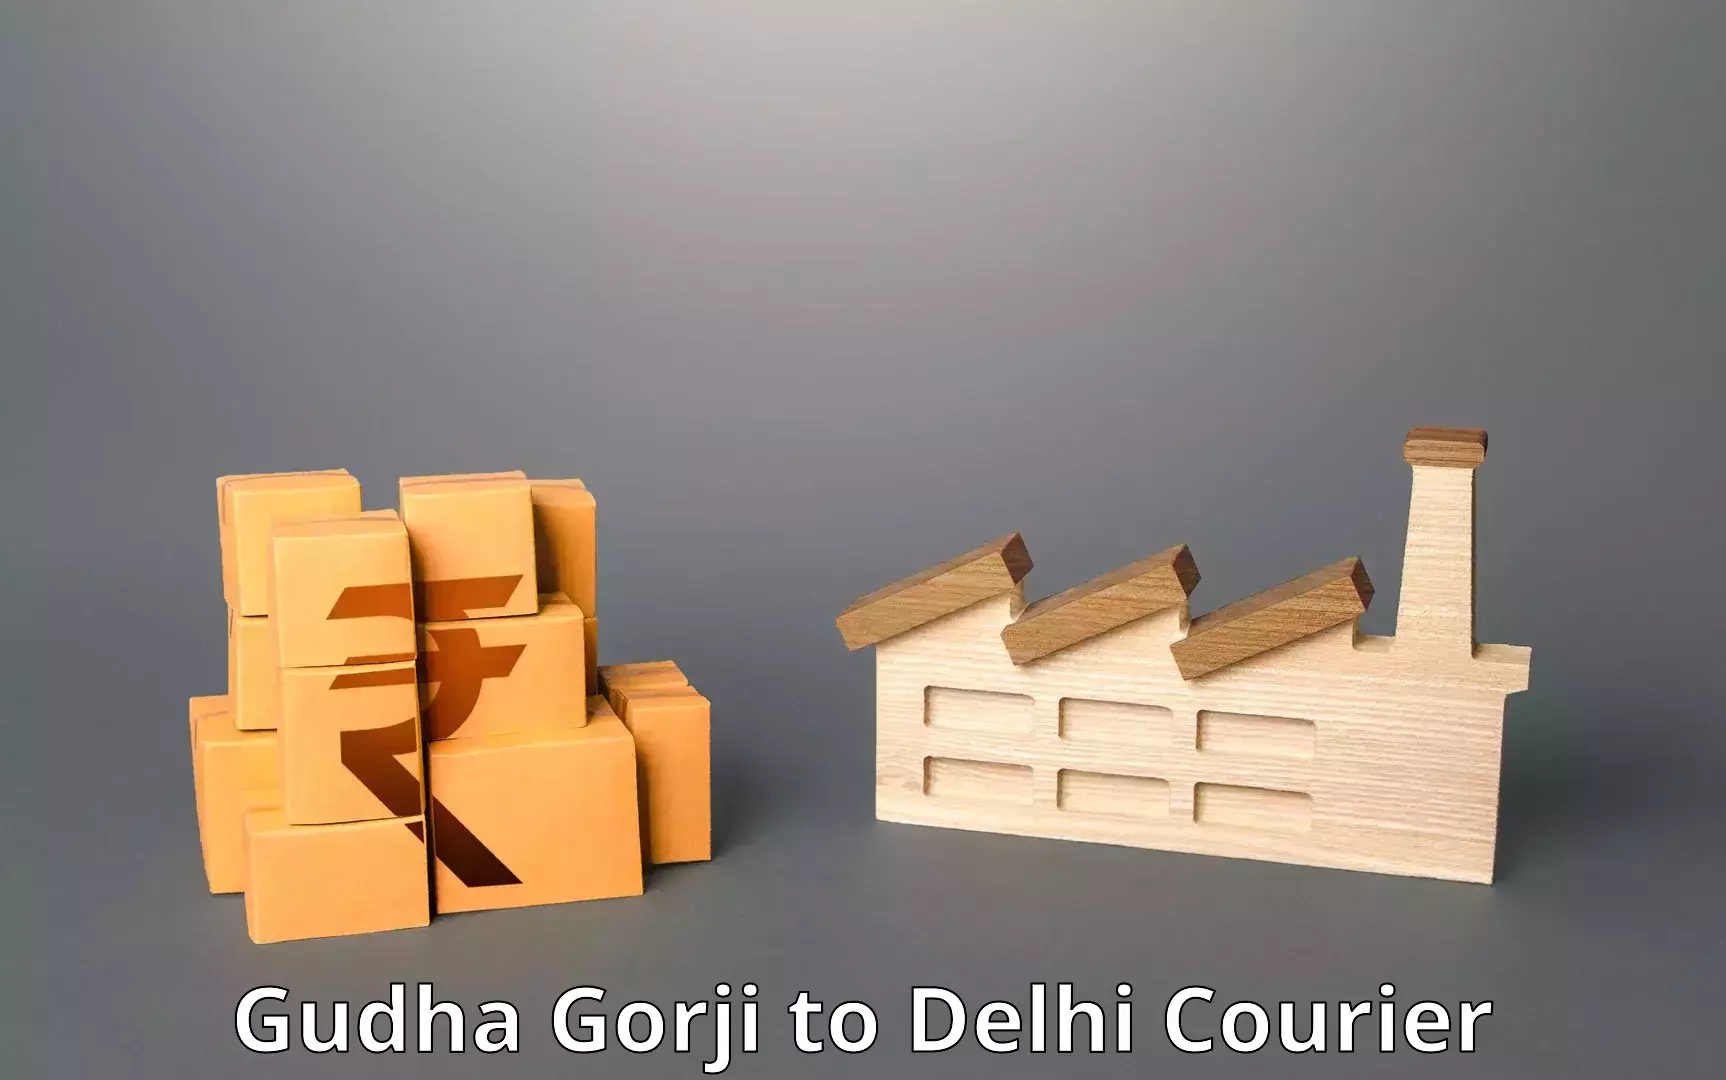 Reliable shipping solutions Gudha Gorji to NIT Delhi